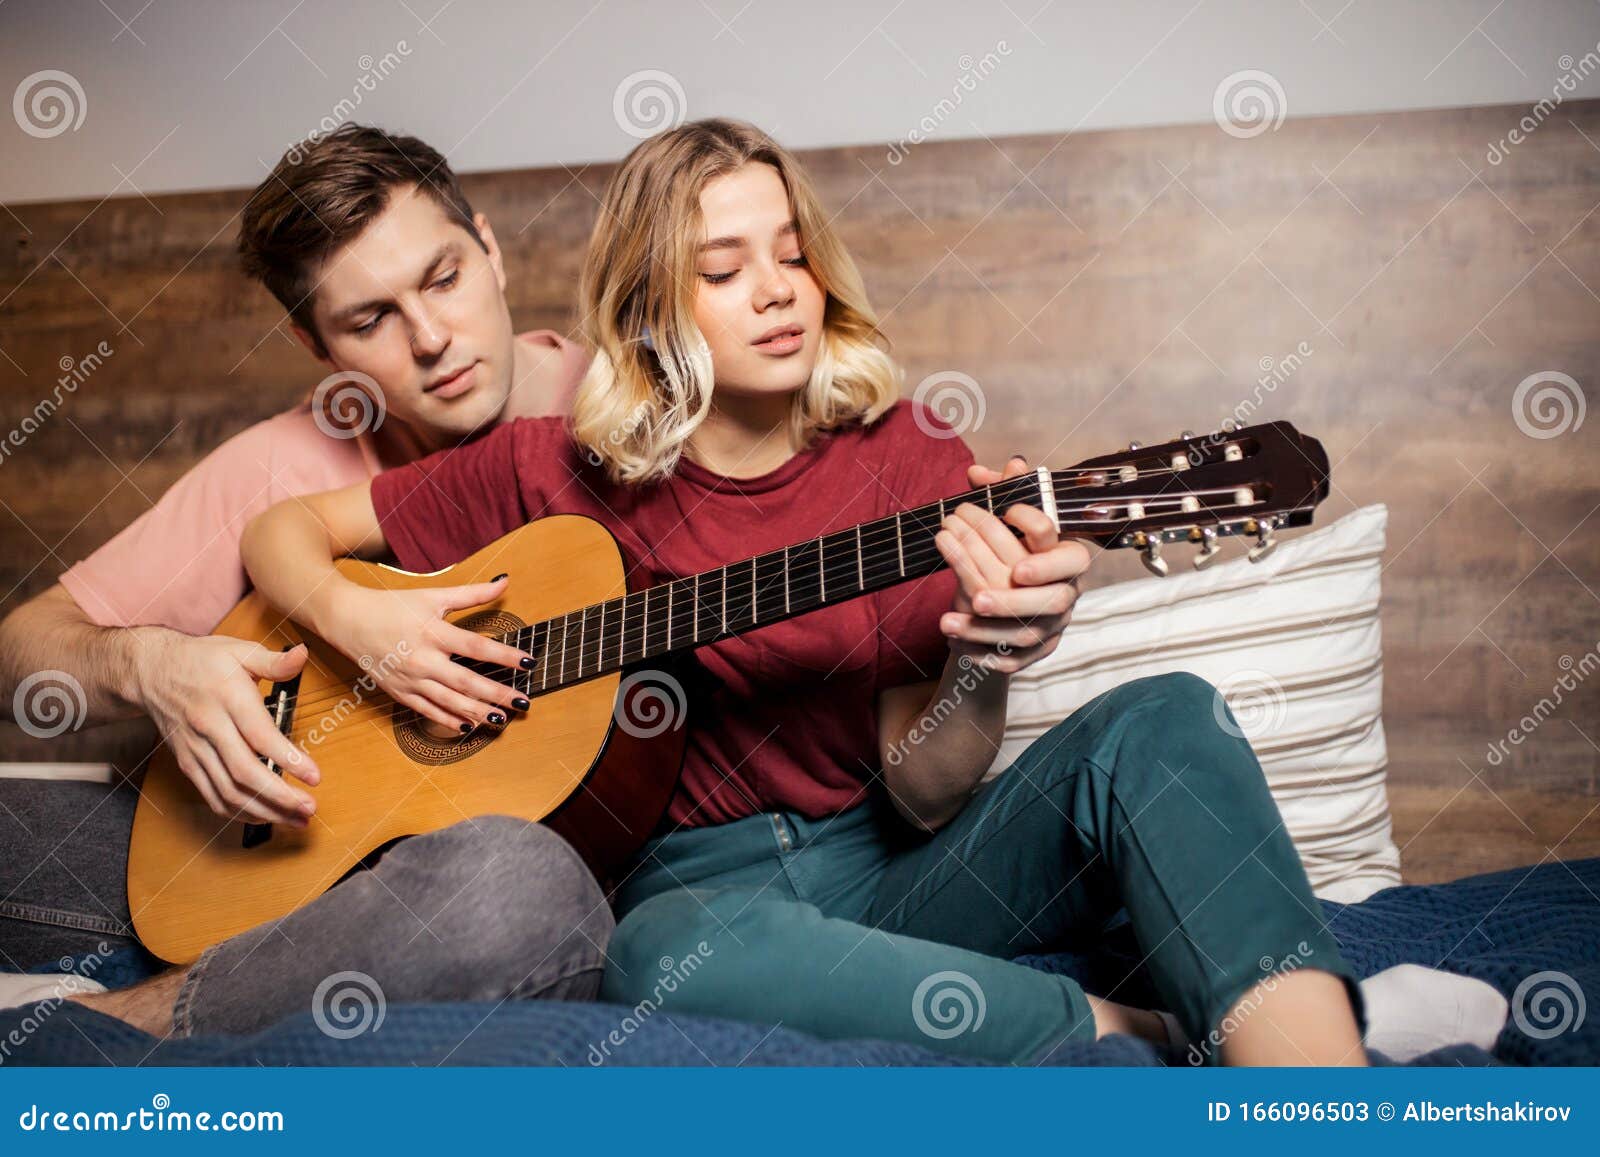 https://thumbs.dreamstime.com/z/bonita-pareja-descansando-en-casa-y-tocando-guitarra-joven-novio-ense%C3%B1ando-su-novia-tocar-la-encantadora-usando-ropa-informal-166096503.jpg